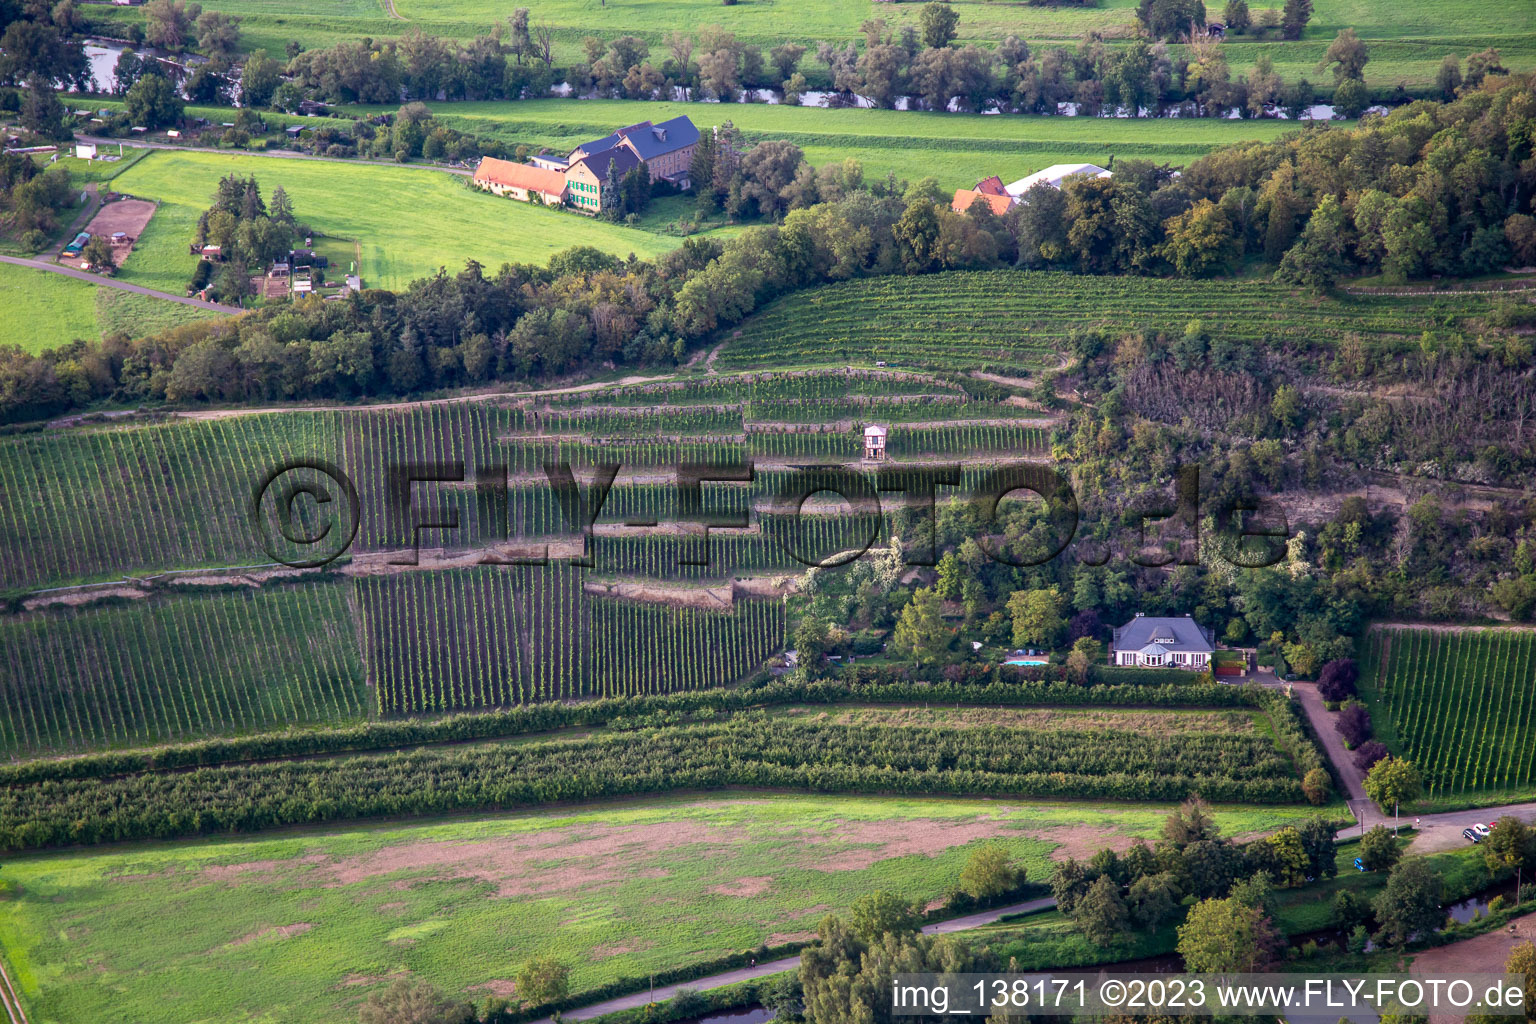 Vue aérienne de Domaine viticole Disibodenberg KG à Odernheim am Glan dans le département Rhénanie-Palatinat, Allemagne